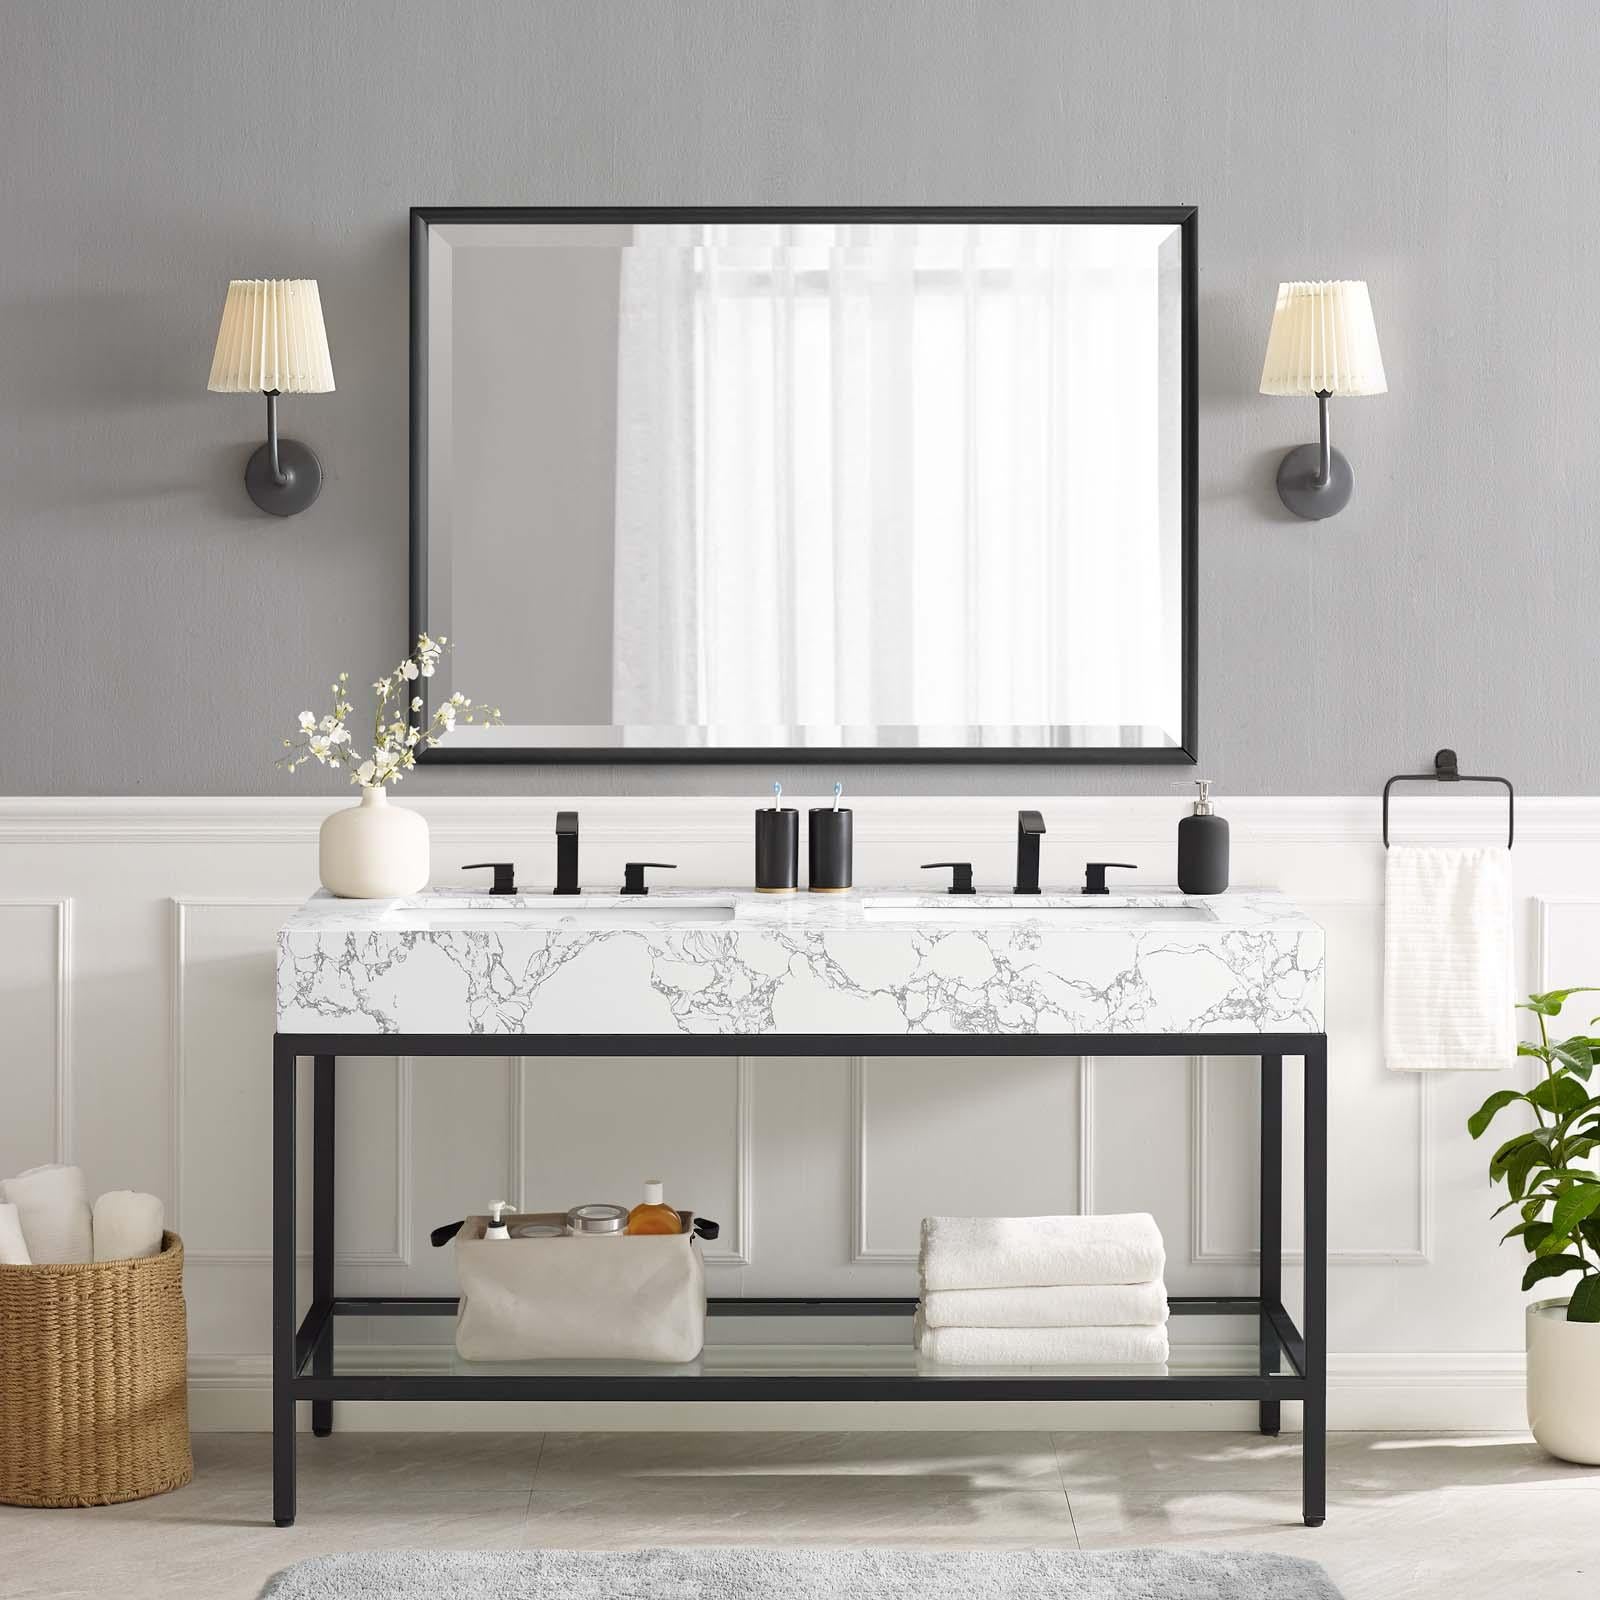 Modway Furniture Modern Kingsley 60" Black Stainless Steel Bathroom Vanity - EEI-4002